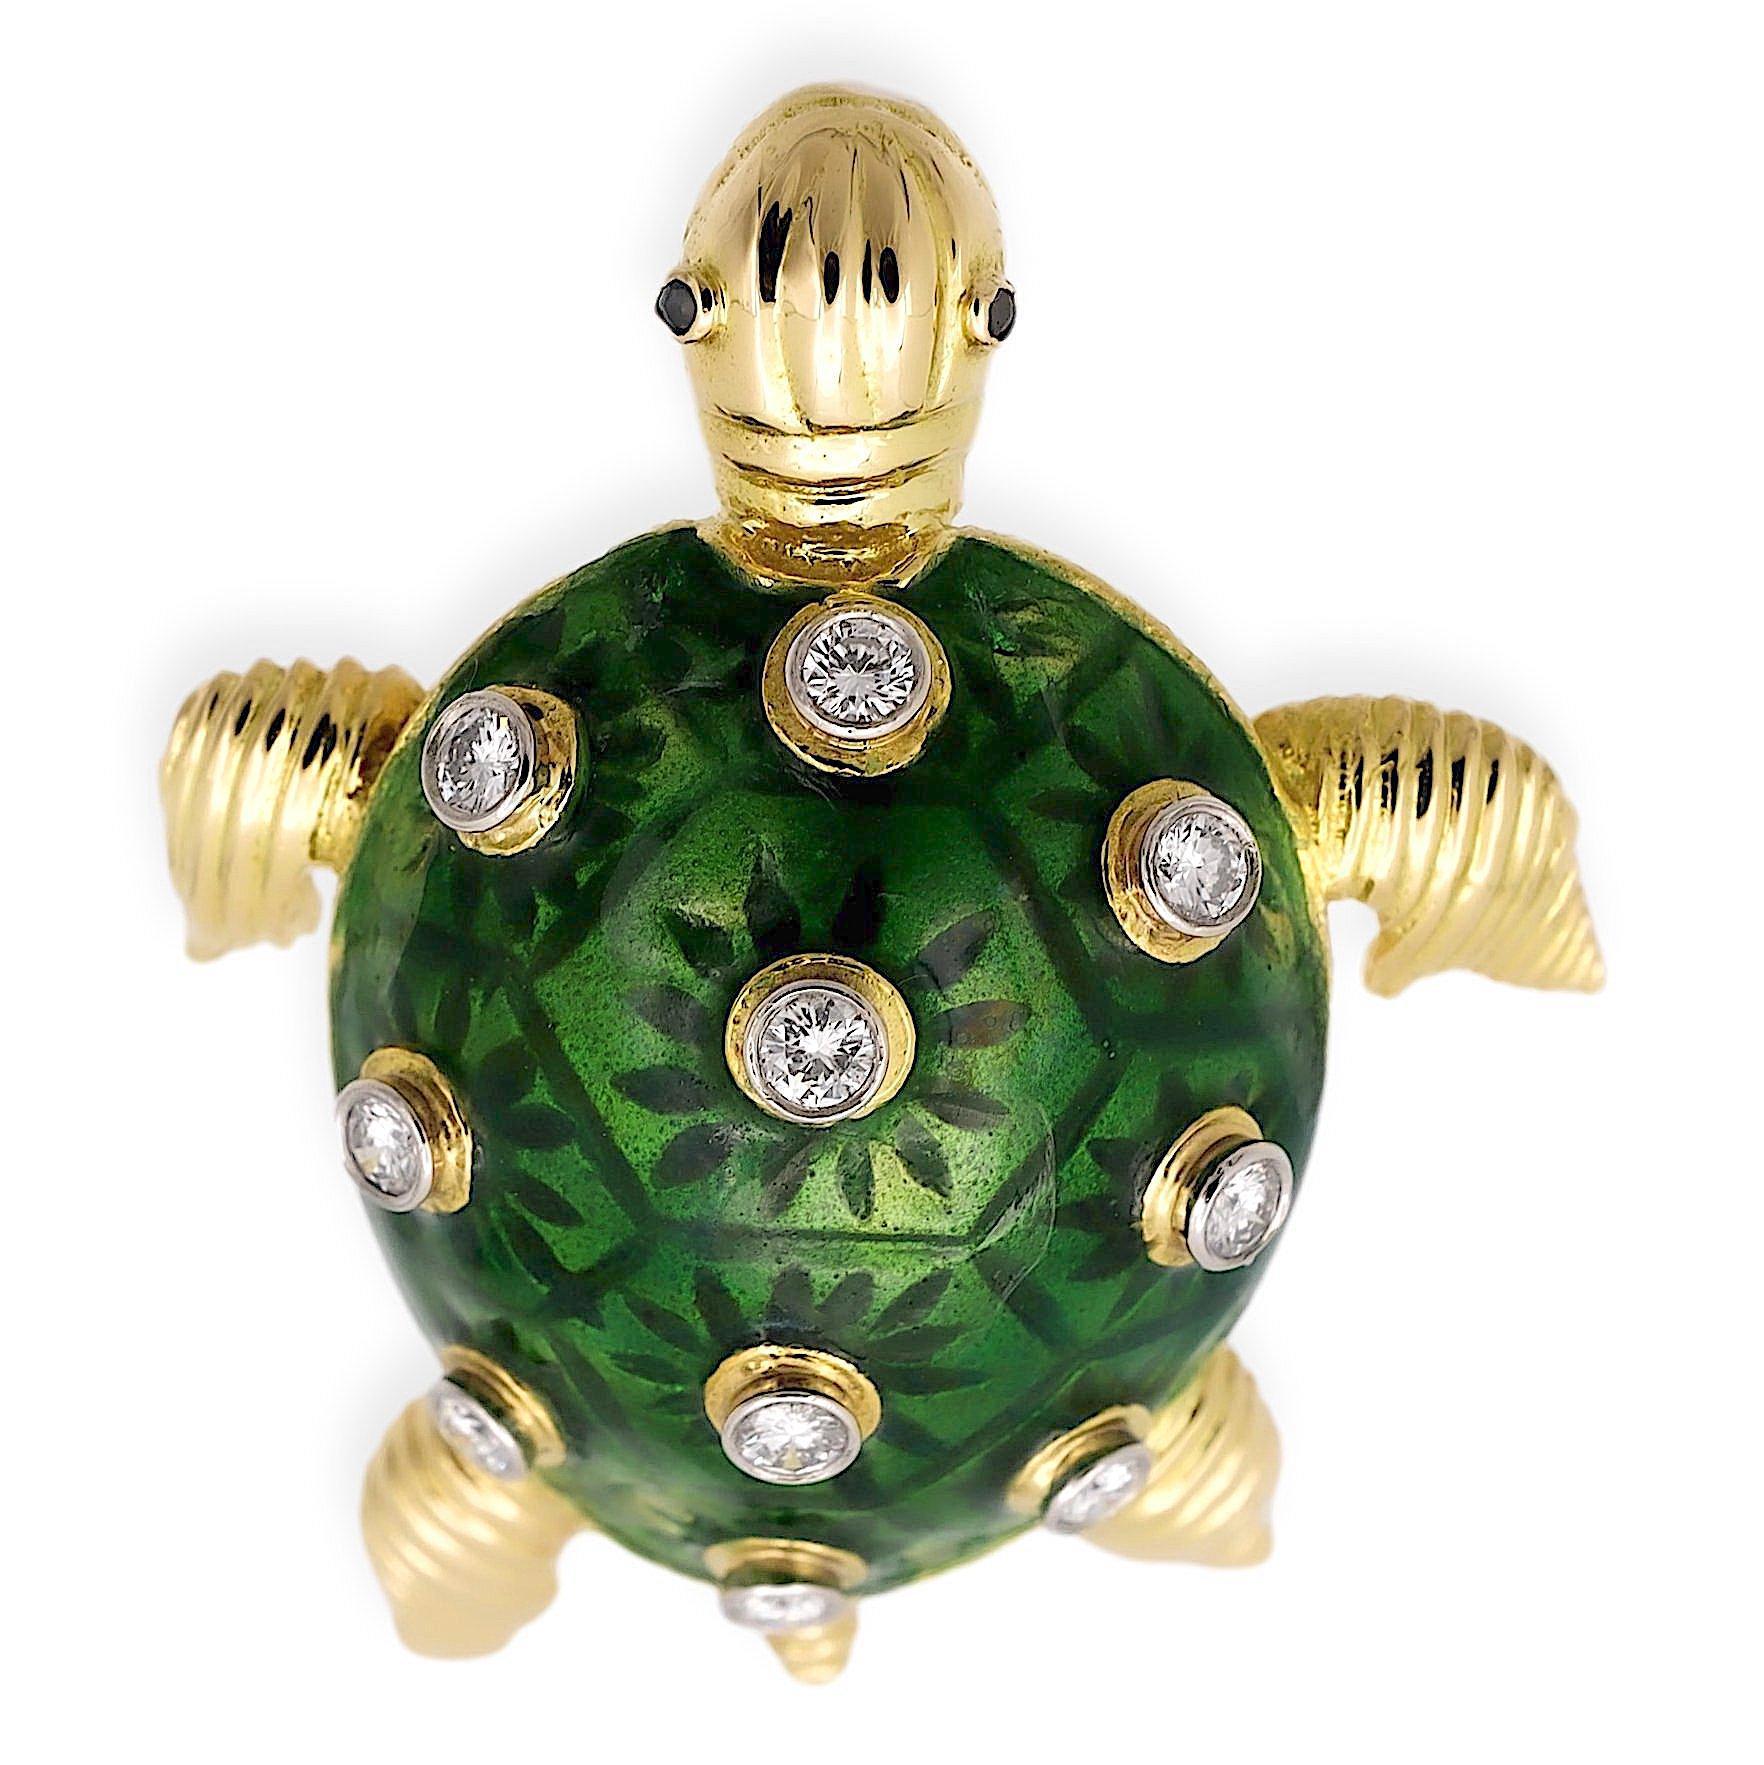 Vintage Turtle Brooch aus geschnitztem 18-karätigem Gelbgold, verziert mit leuchtend grüner Emaille und verziert mit zehn runden Diamanten im Brillantschliff mit einem Gesamtgewicht von etwa 0,60 Karat. Die Brosche hat eine Röhrennadel mit